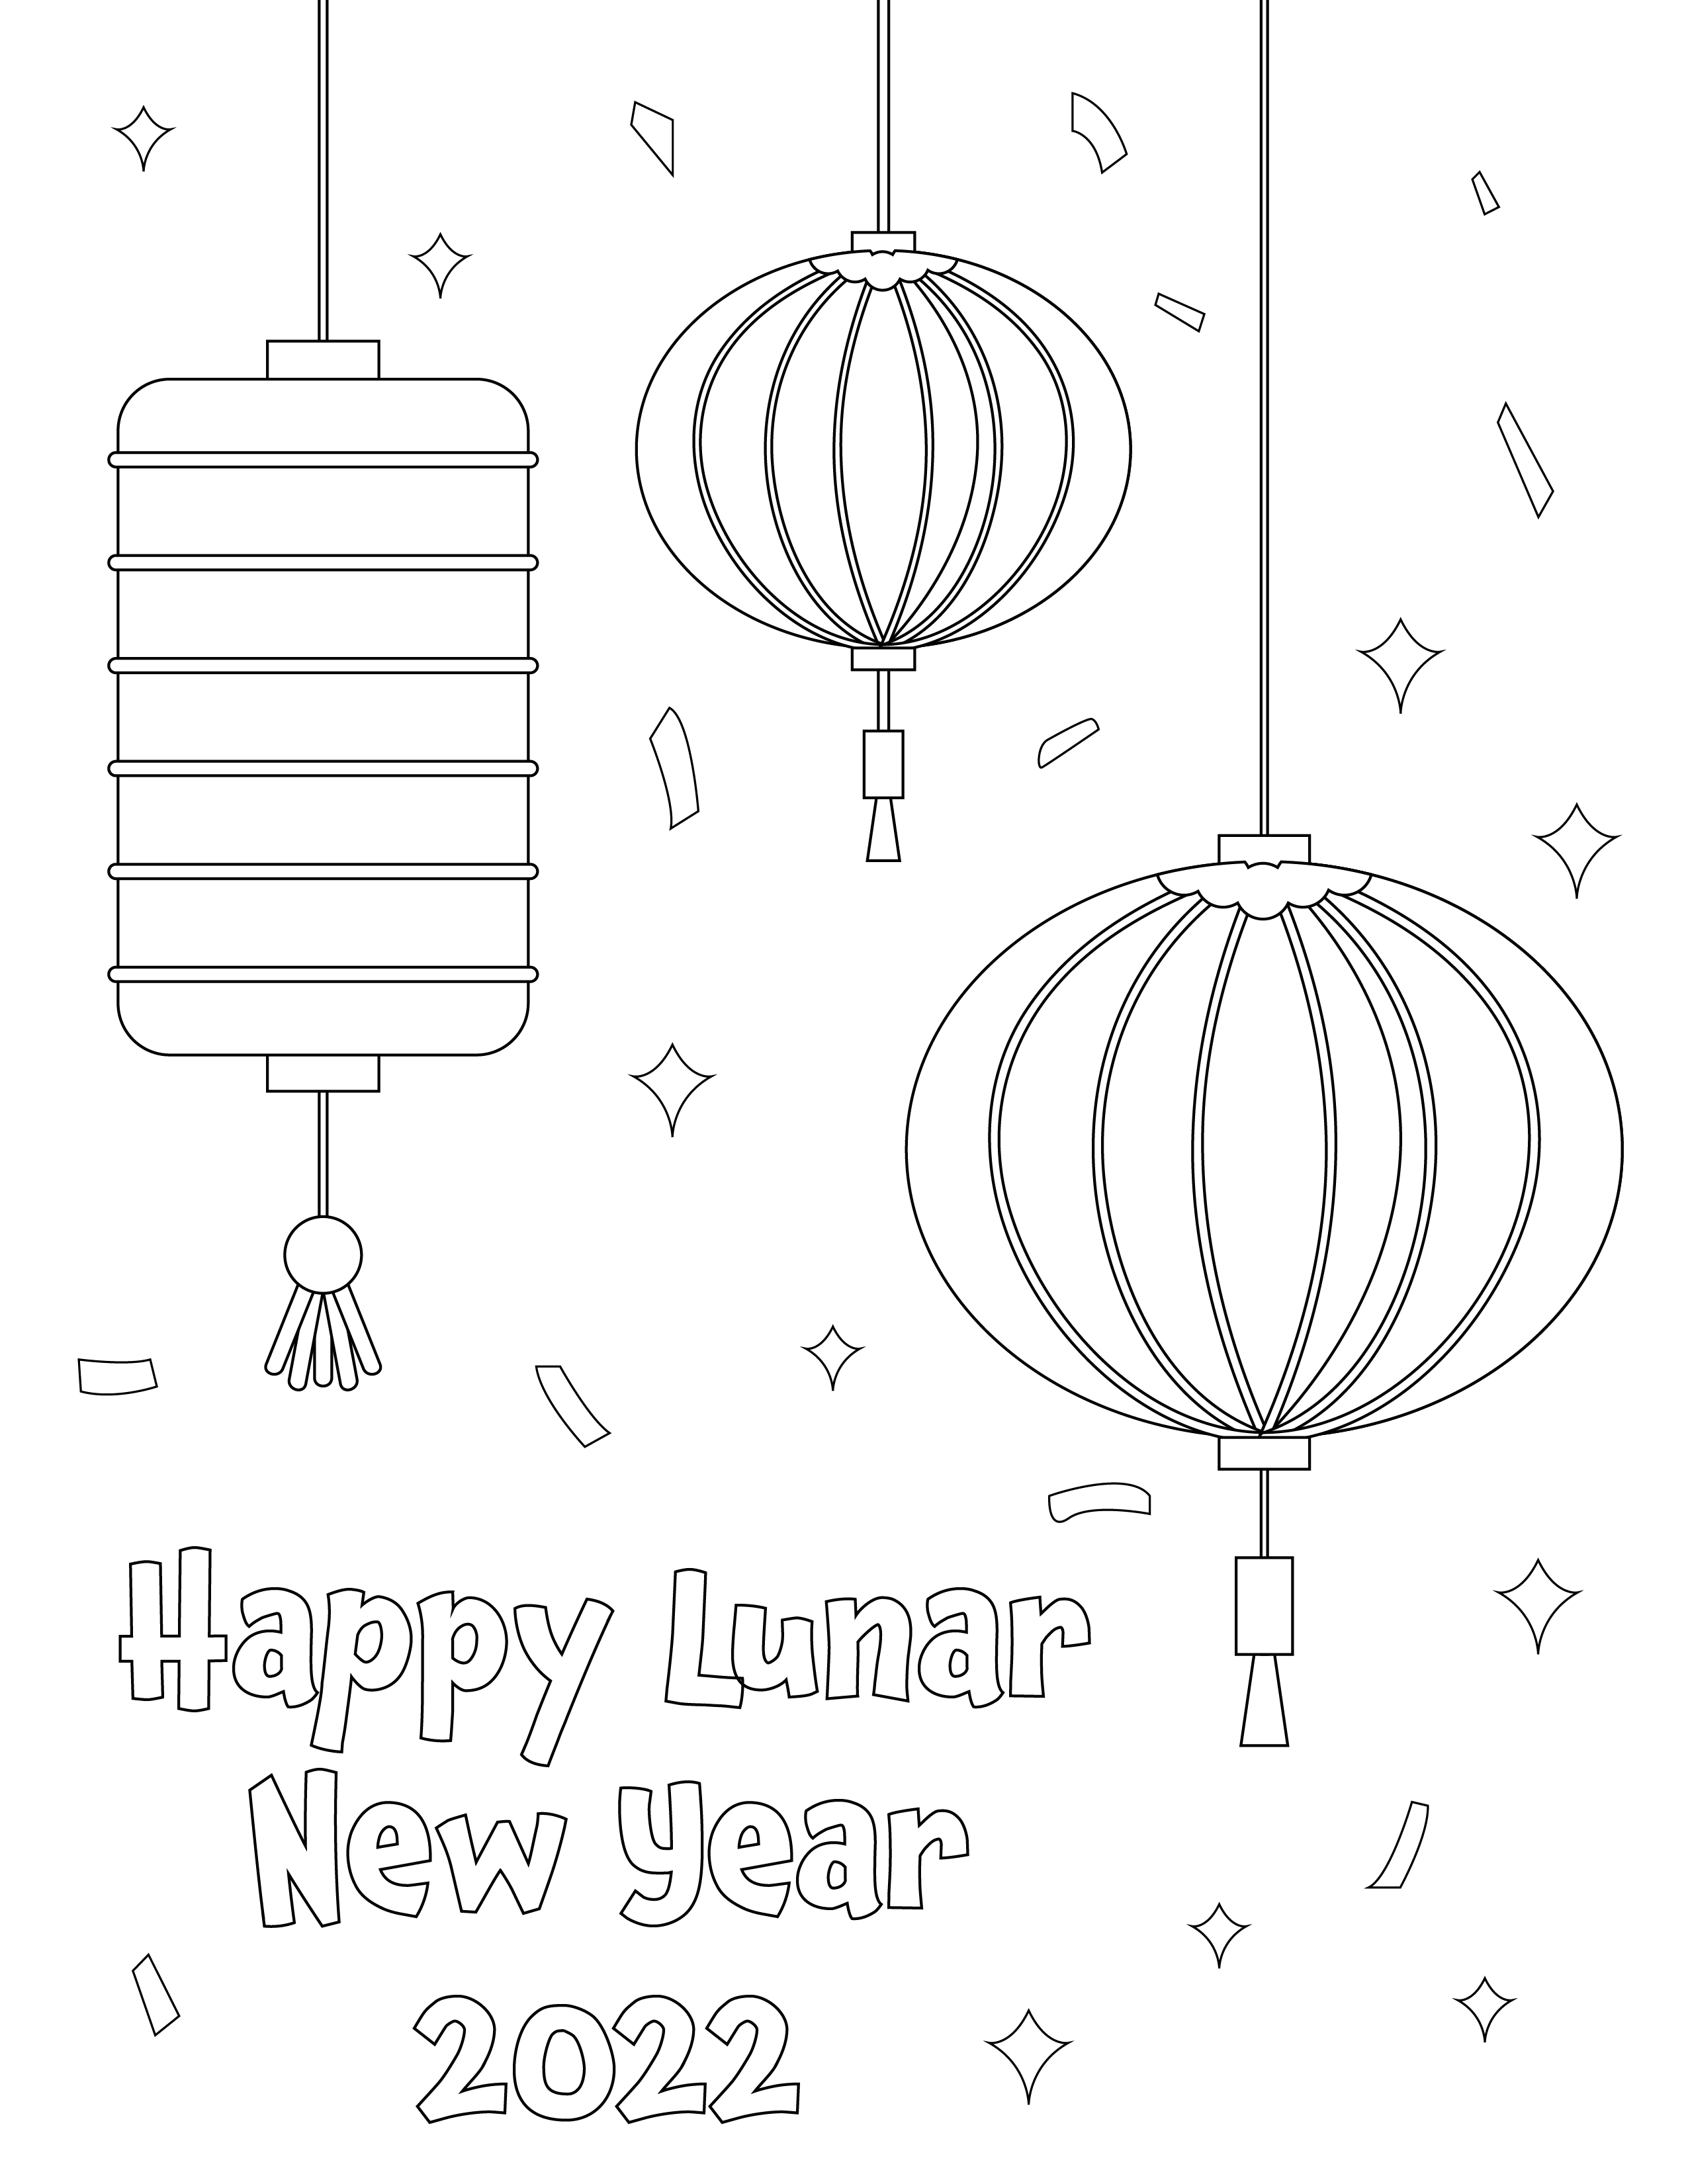 lunar-new-year_lanterns